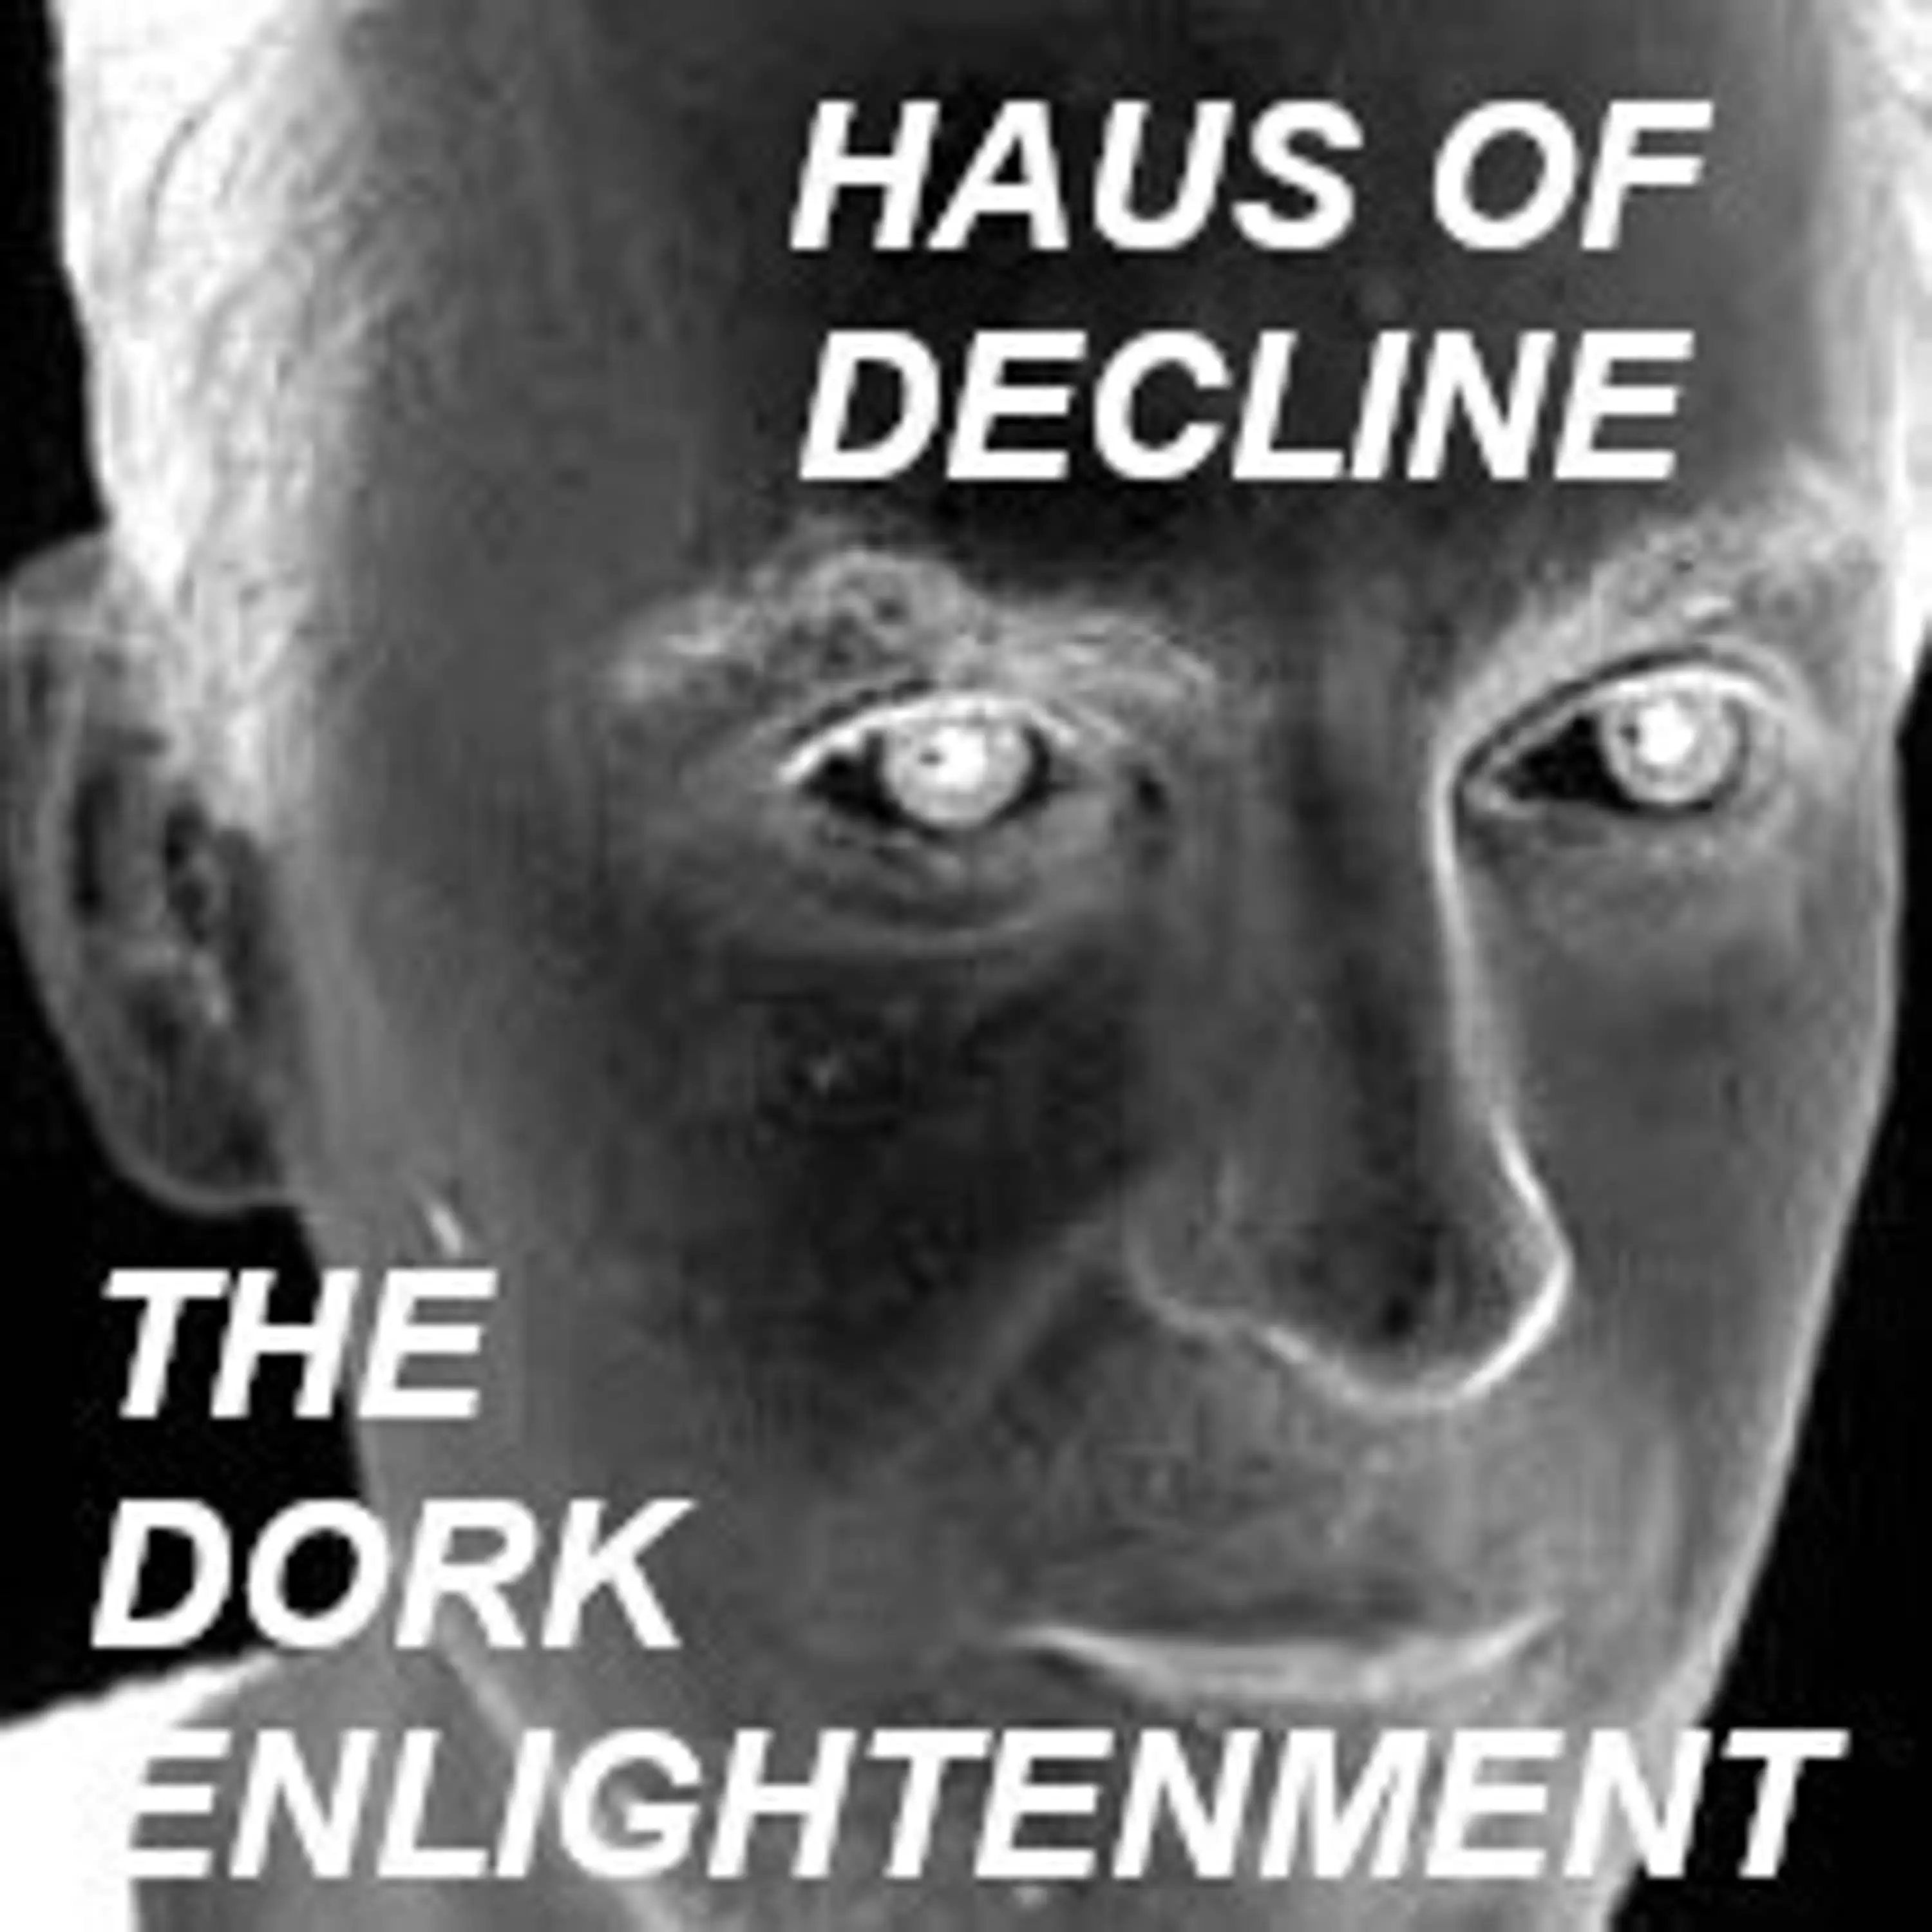 The Dork Enlightenment